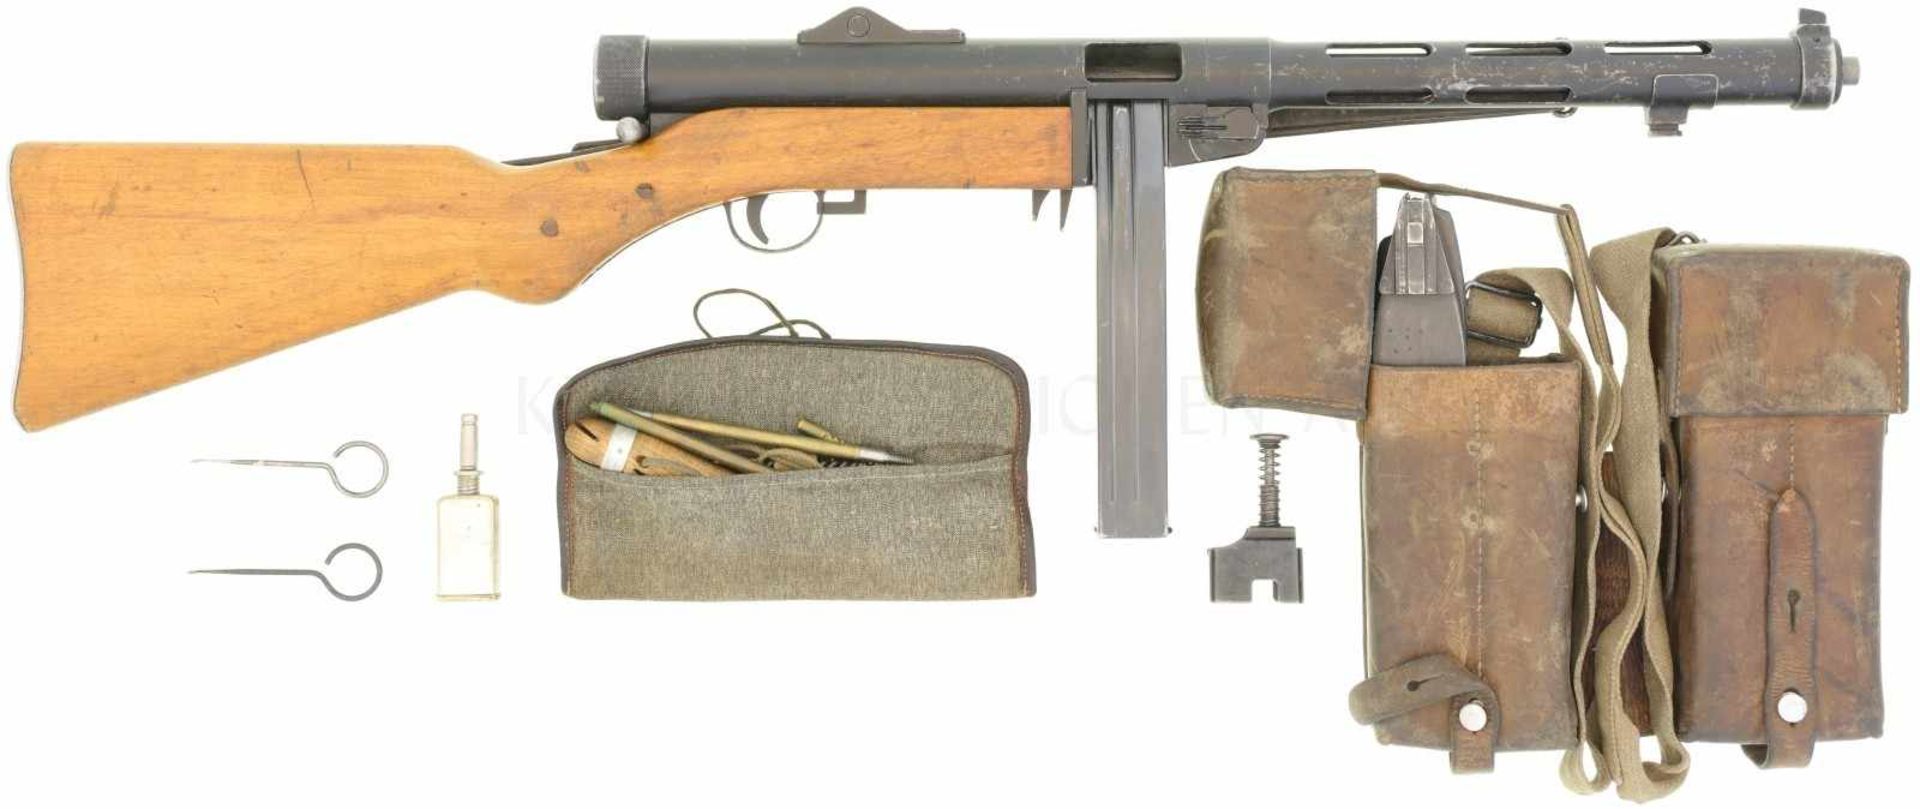 Maschinenpistole, Hispano Suiza, MP 43/44, Kal. 9mmP